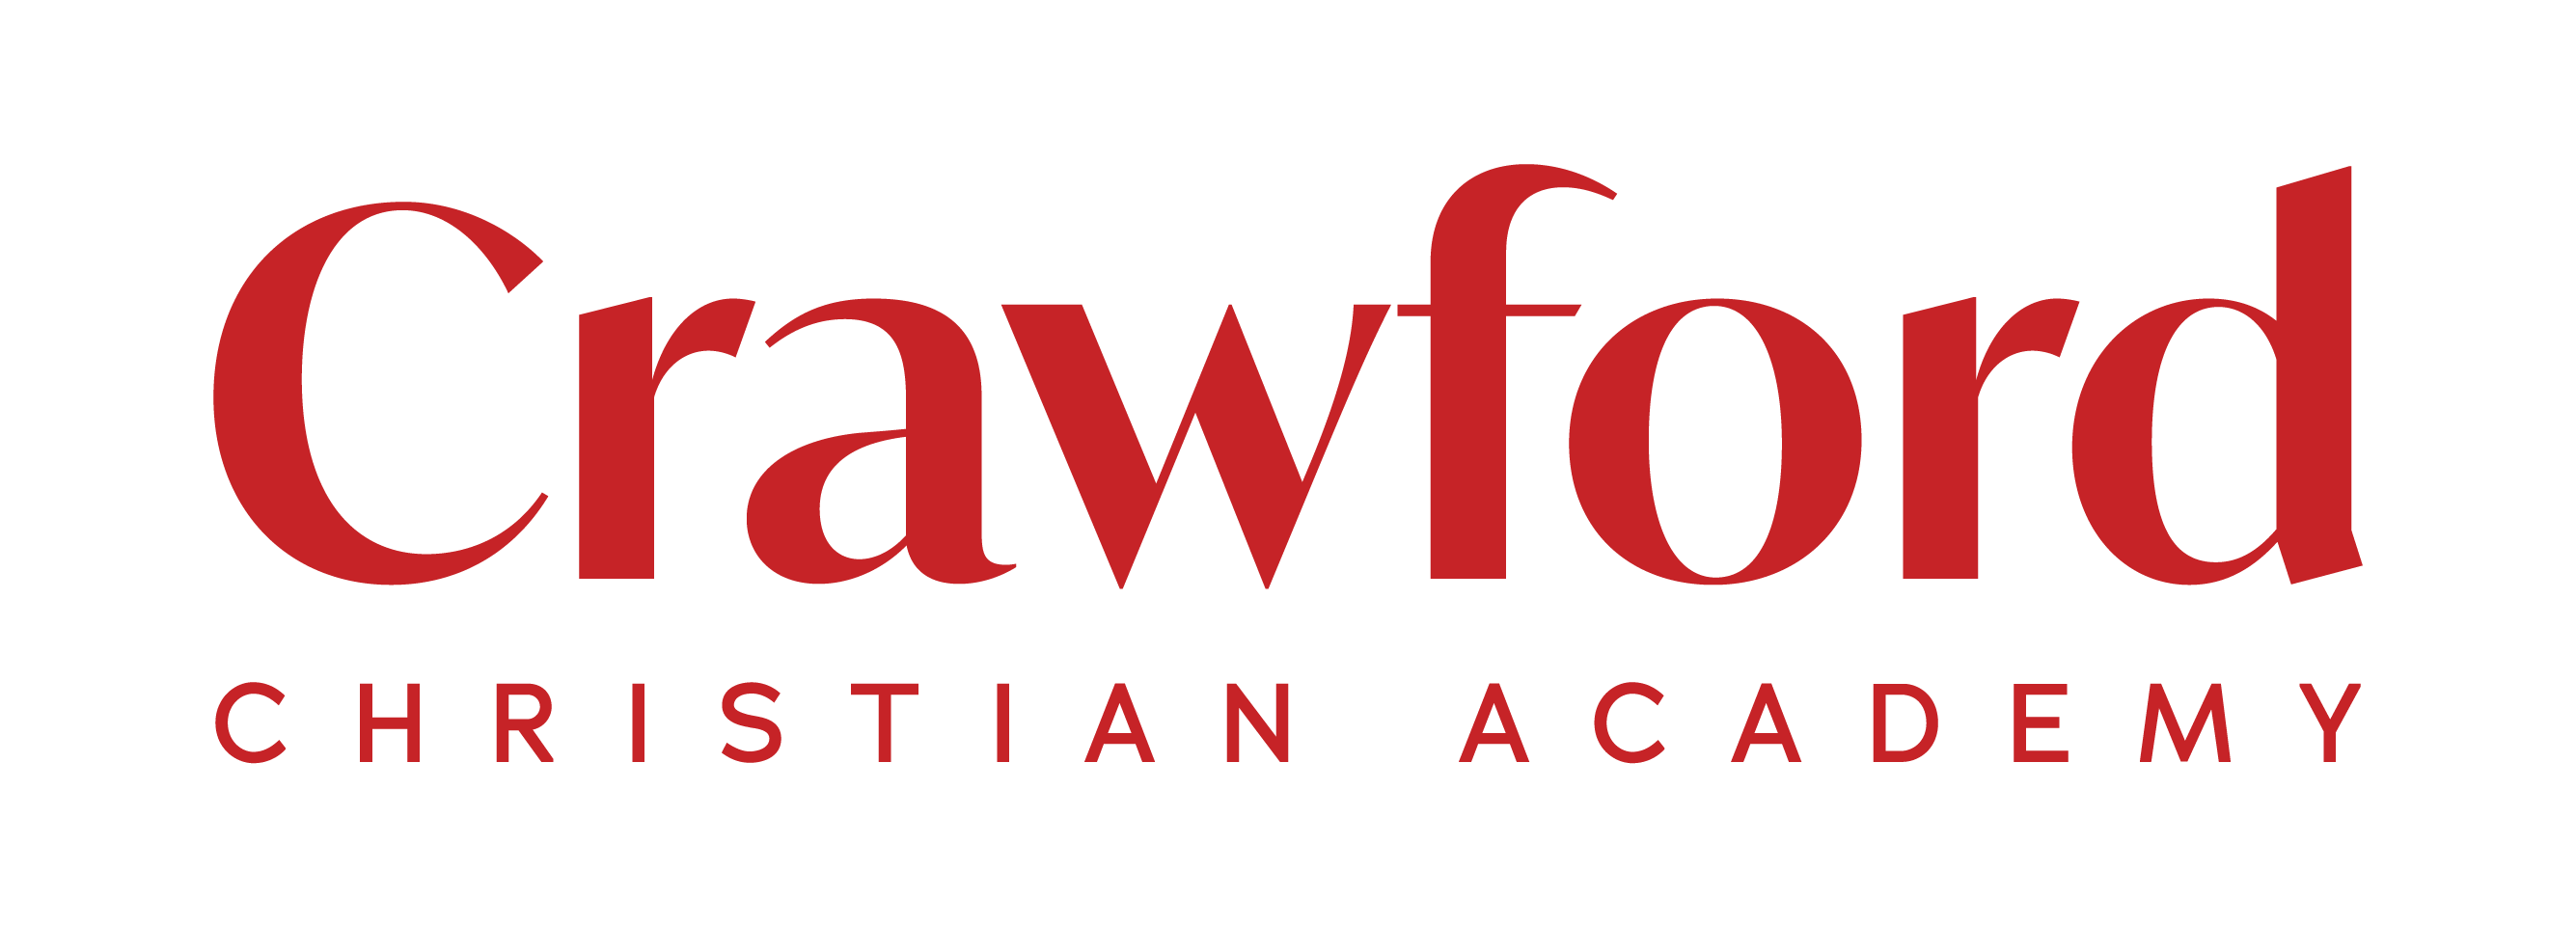 Crawford Christian Academy